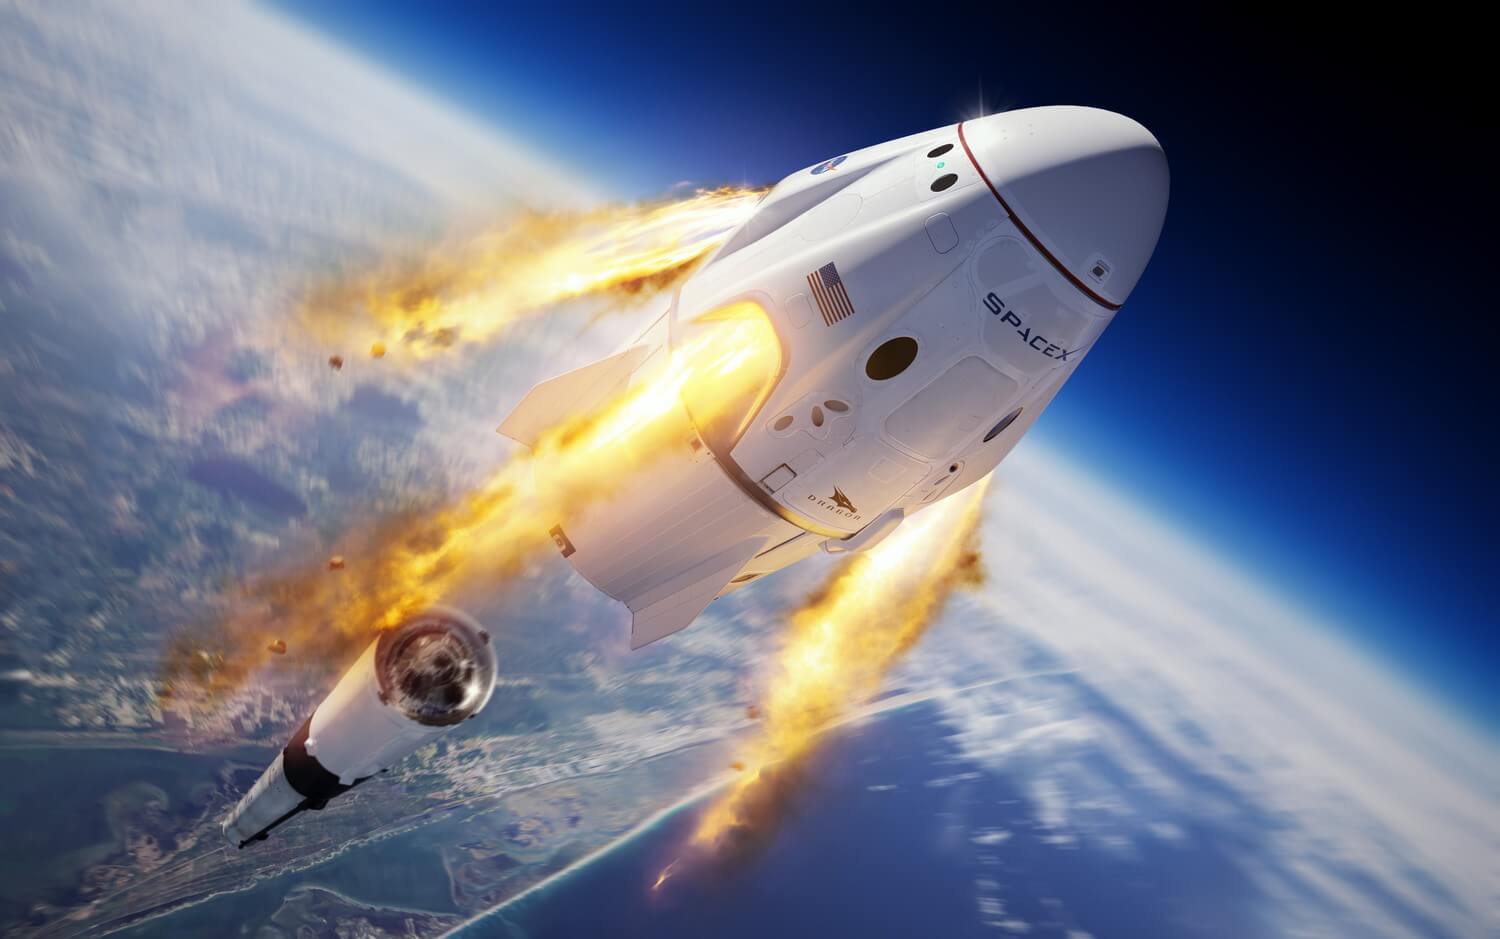 #वीडियो | SpaceX विस्फोट से उड़ा दिया अपने रॉकेट के परीक्षण के दौरान